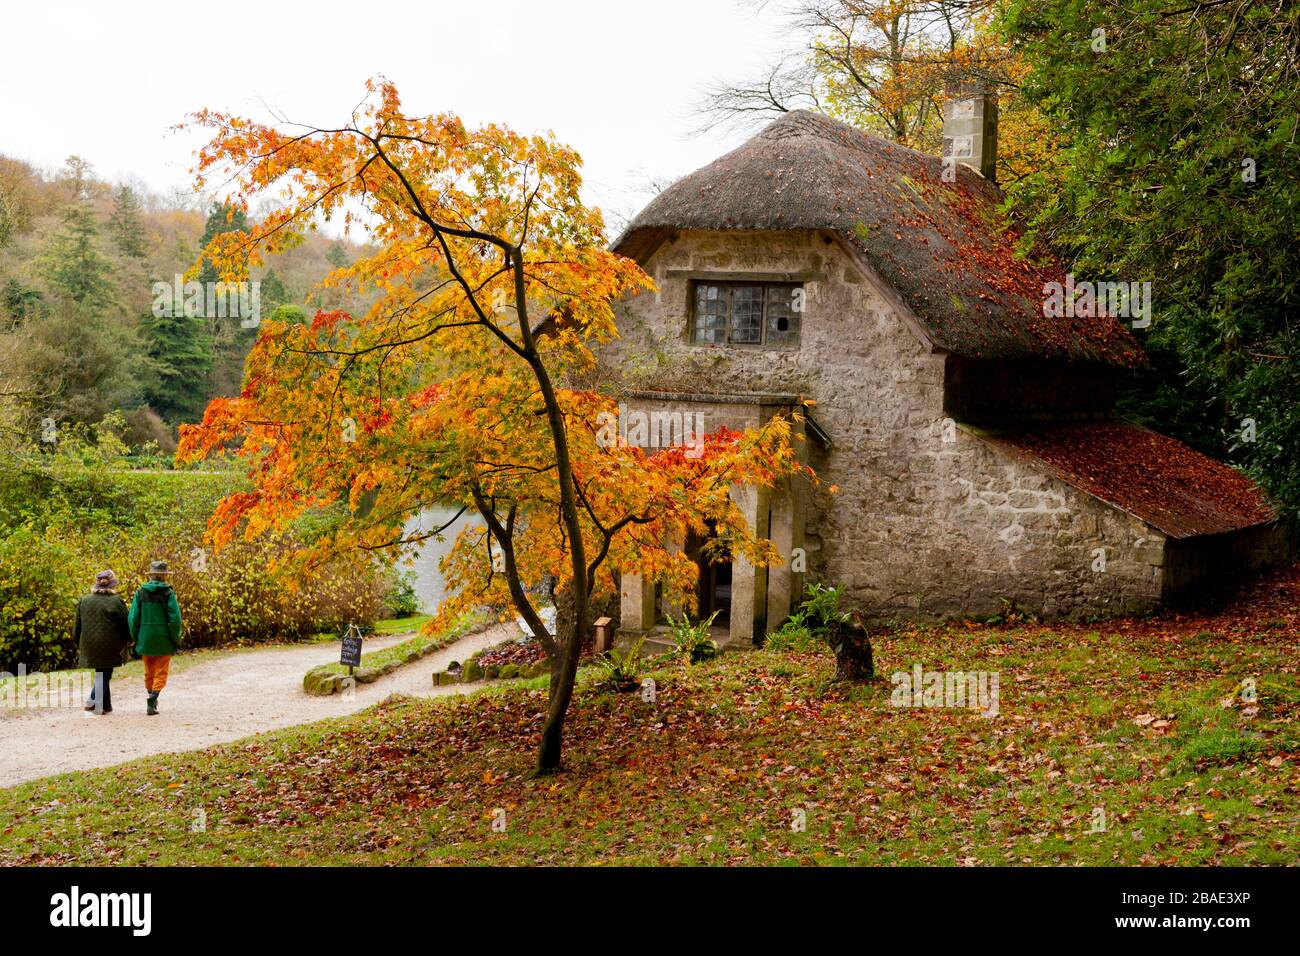 Couleur d'automne à l'extérieur du cottage gothique des jardins de Stourhead, Wiltshire, Angleterre, Royaume-Uni Banque D'Images